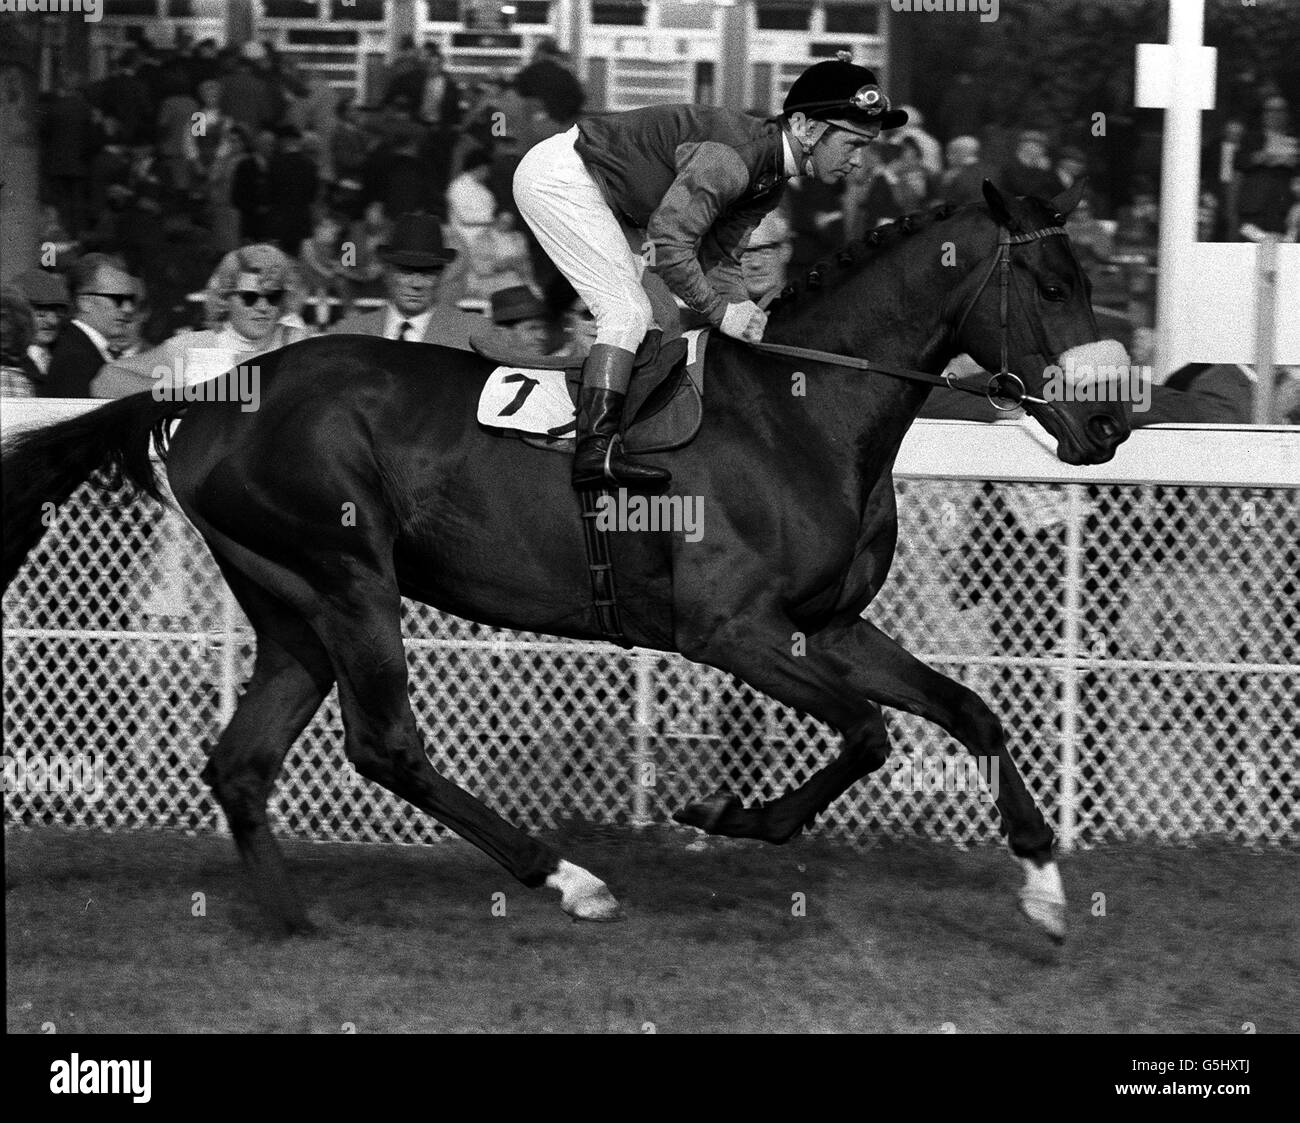 1970: Magna Carta avec le jockey Geoff Lewis. Magna Carta est l'un des chevaux entraînés par Ian Balding pour la Reine. Par Charlottesville d'une jument d'Alycidon, il a une grande endurance et a gagné l'année dernière à deux miles (deux fois) et un mile et 7 furannes. Banque D'Images